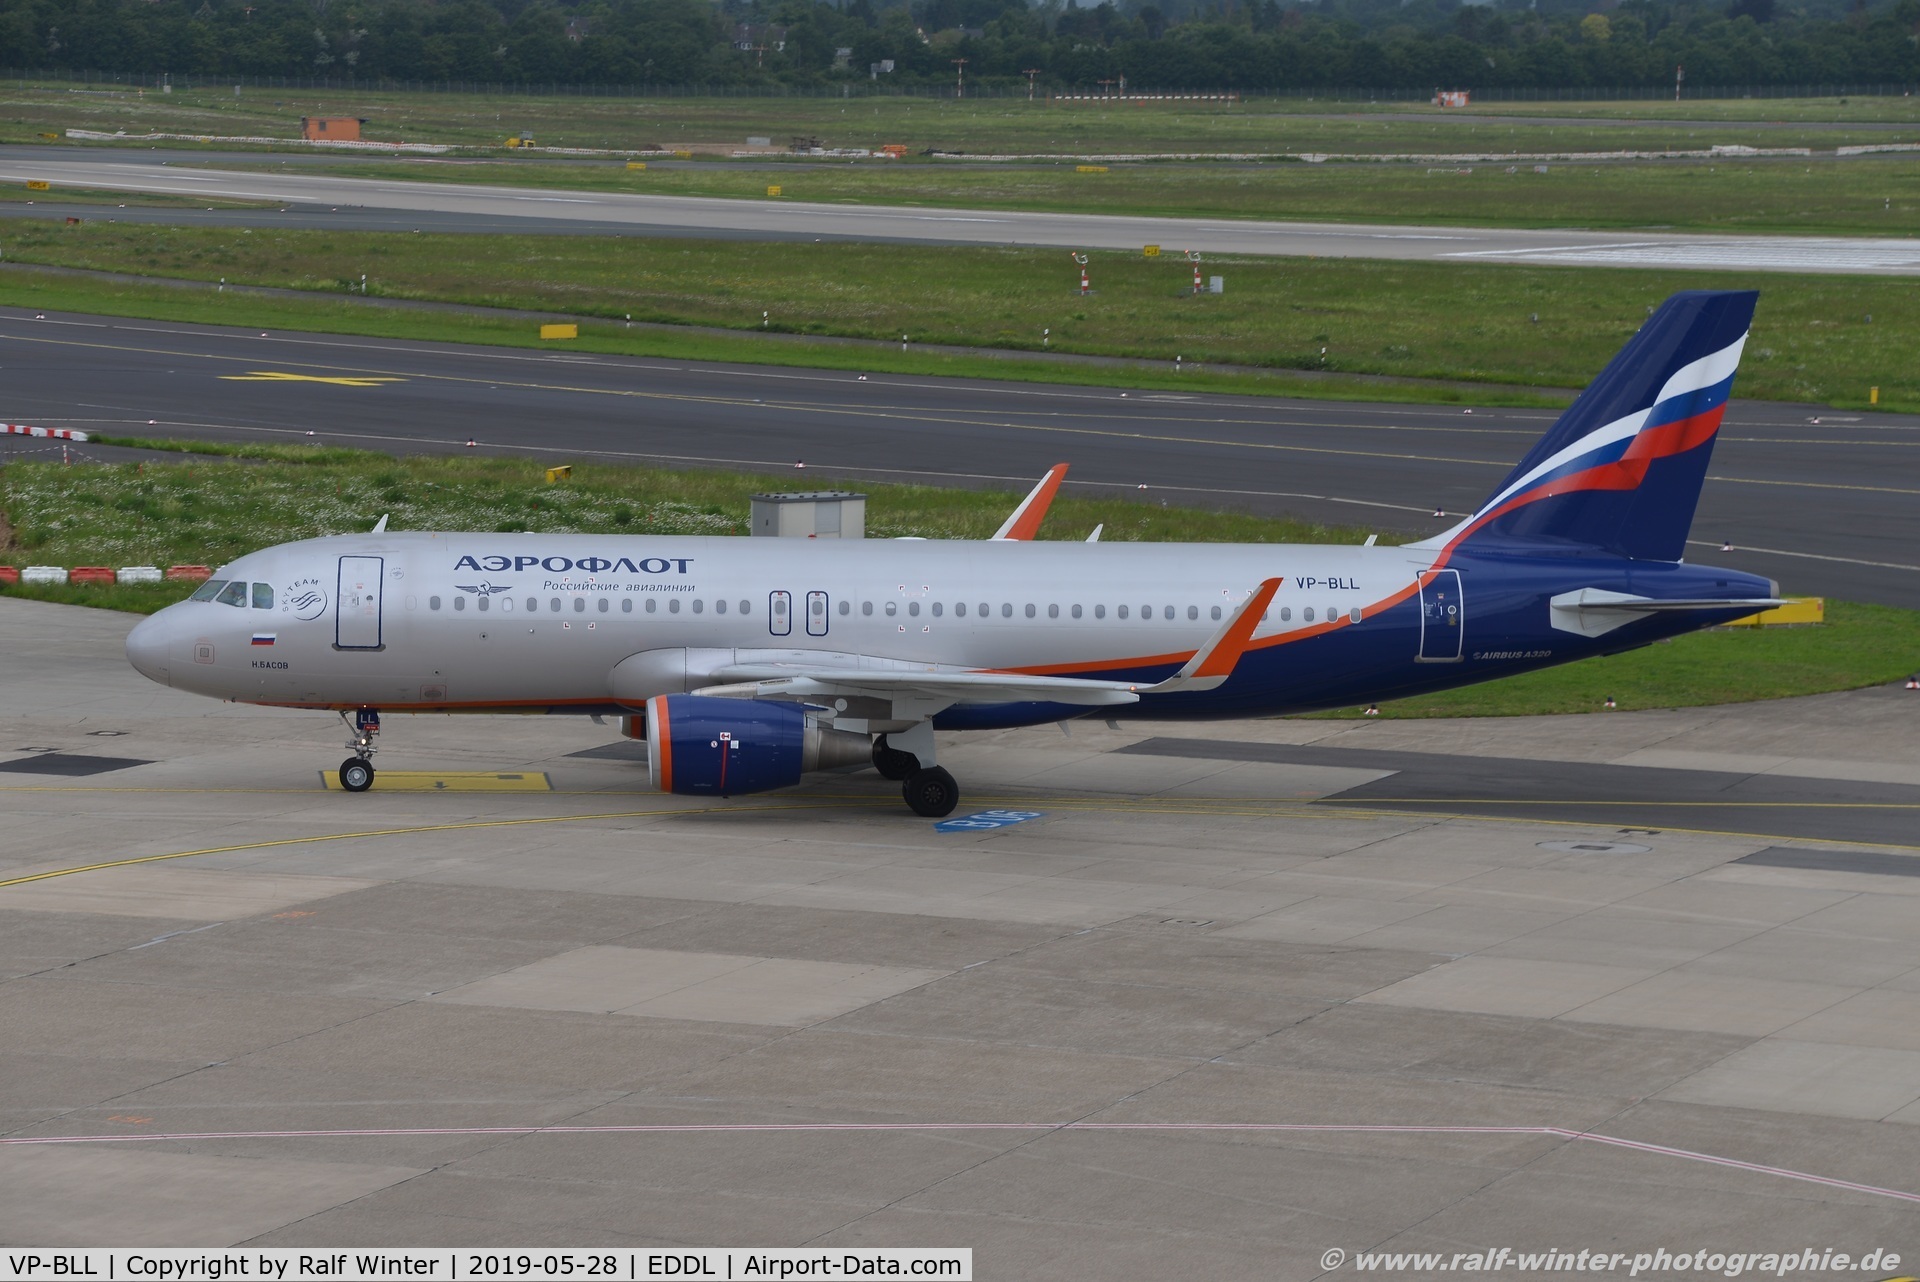 VP-BLL, 2013 Airbus A320-214 C/N 5572, Airbus A320-214 - SU AFL Aeroflot 'N. Basov' - 5572 - VP-BLL - 28.05.2019 - DUS